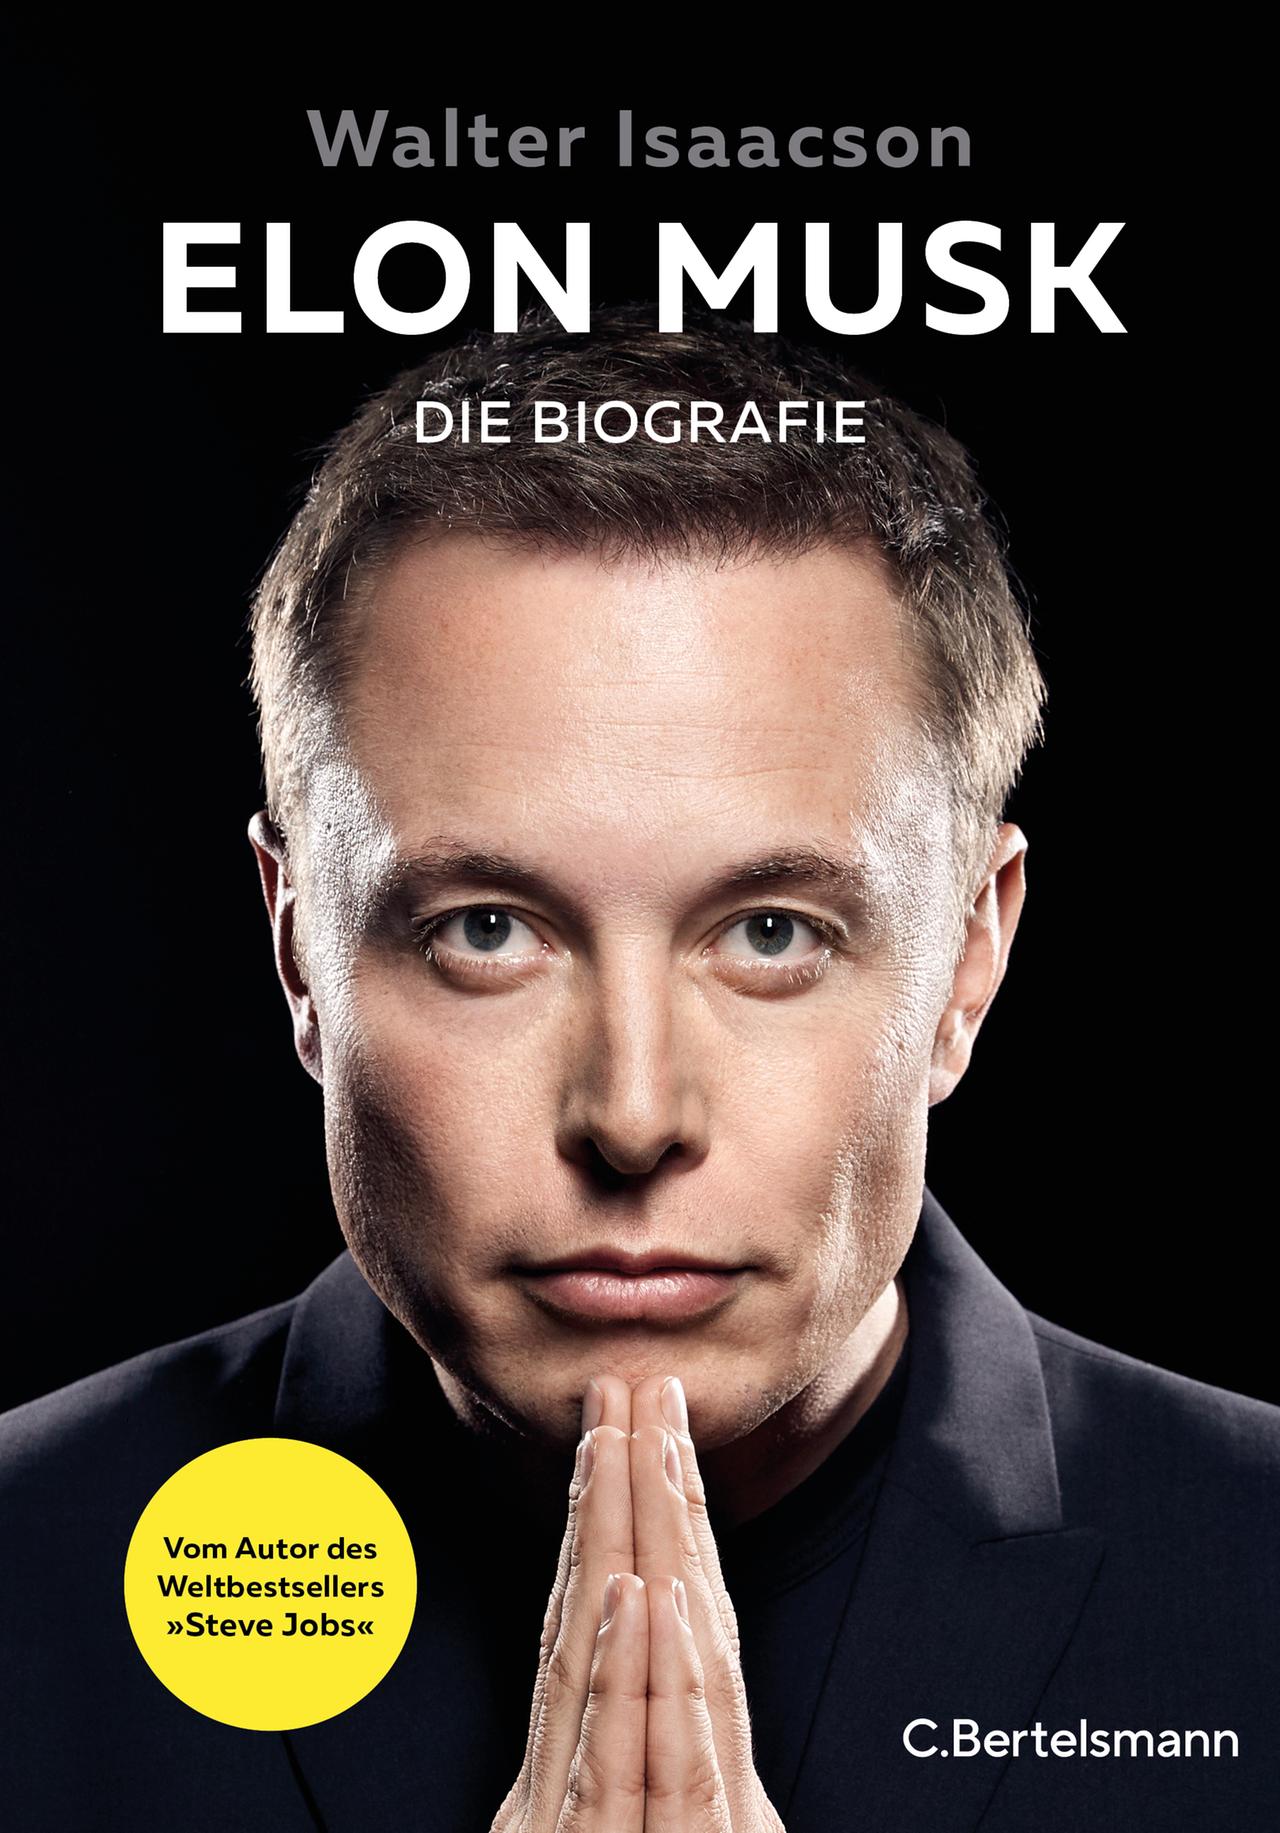 Das Cover der deutschen Übersetzung des Buches "Elon Musk" mit einem Portraitfoto von Musk.